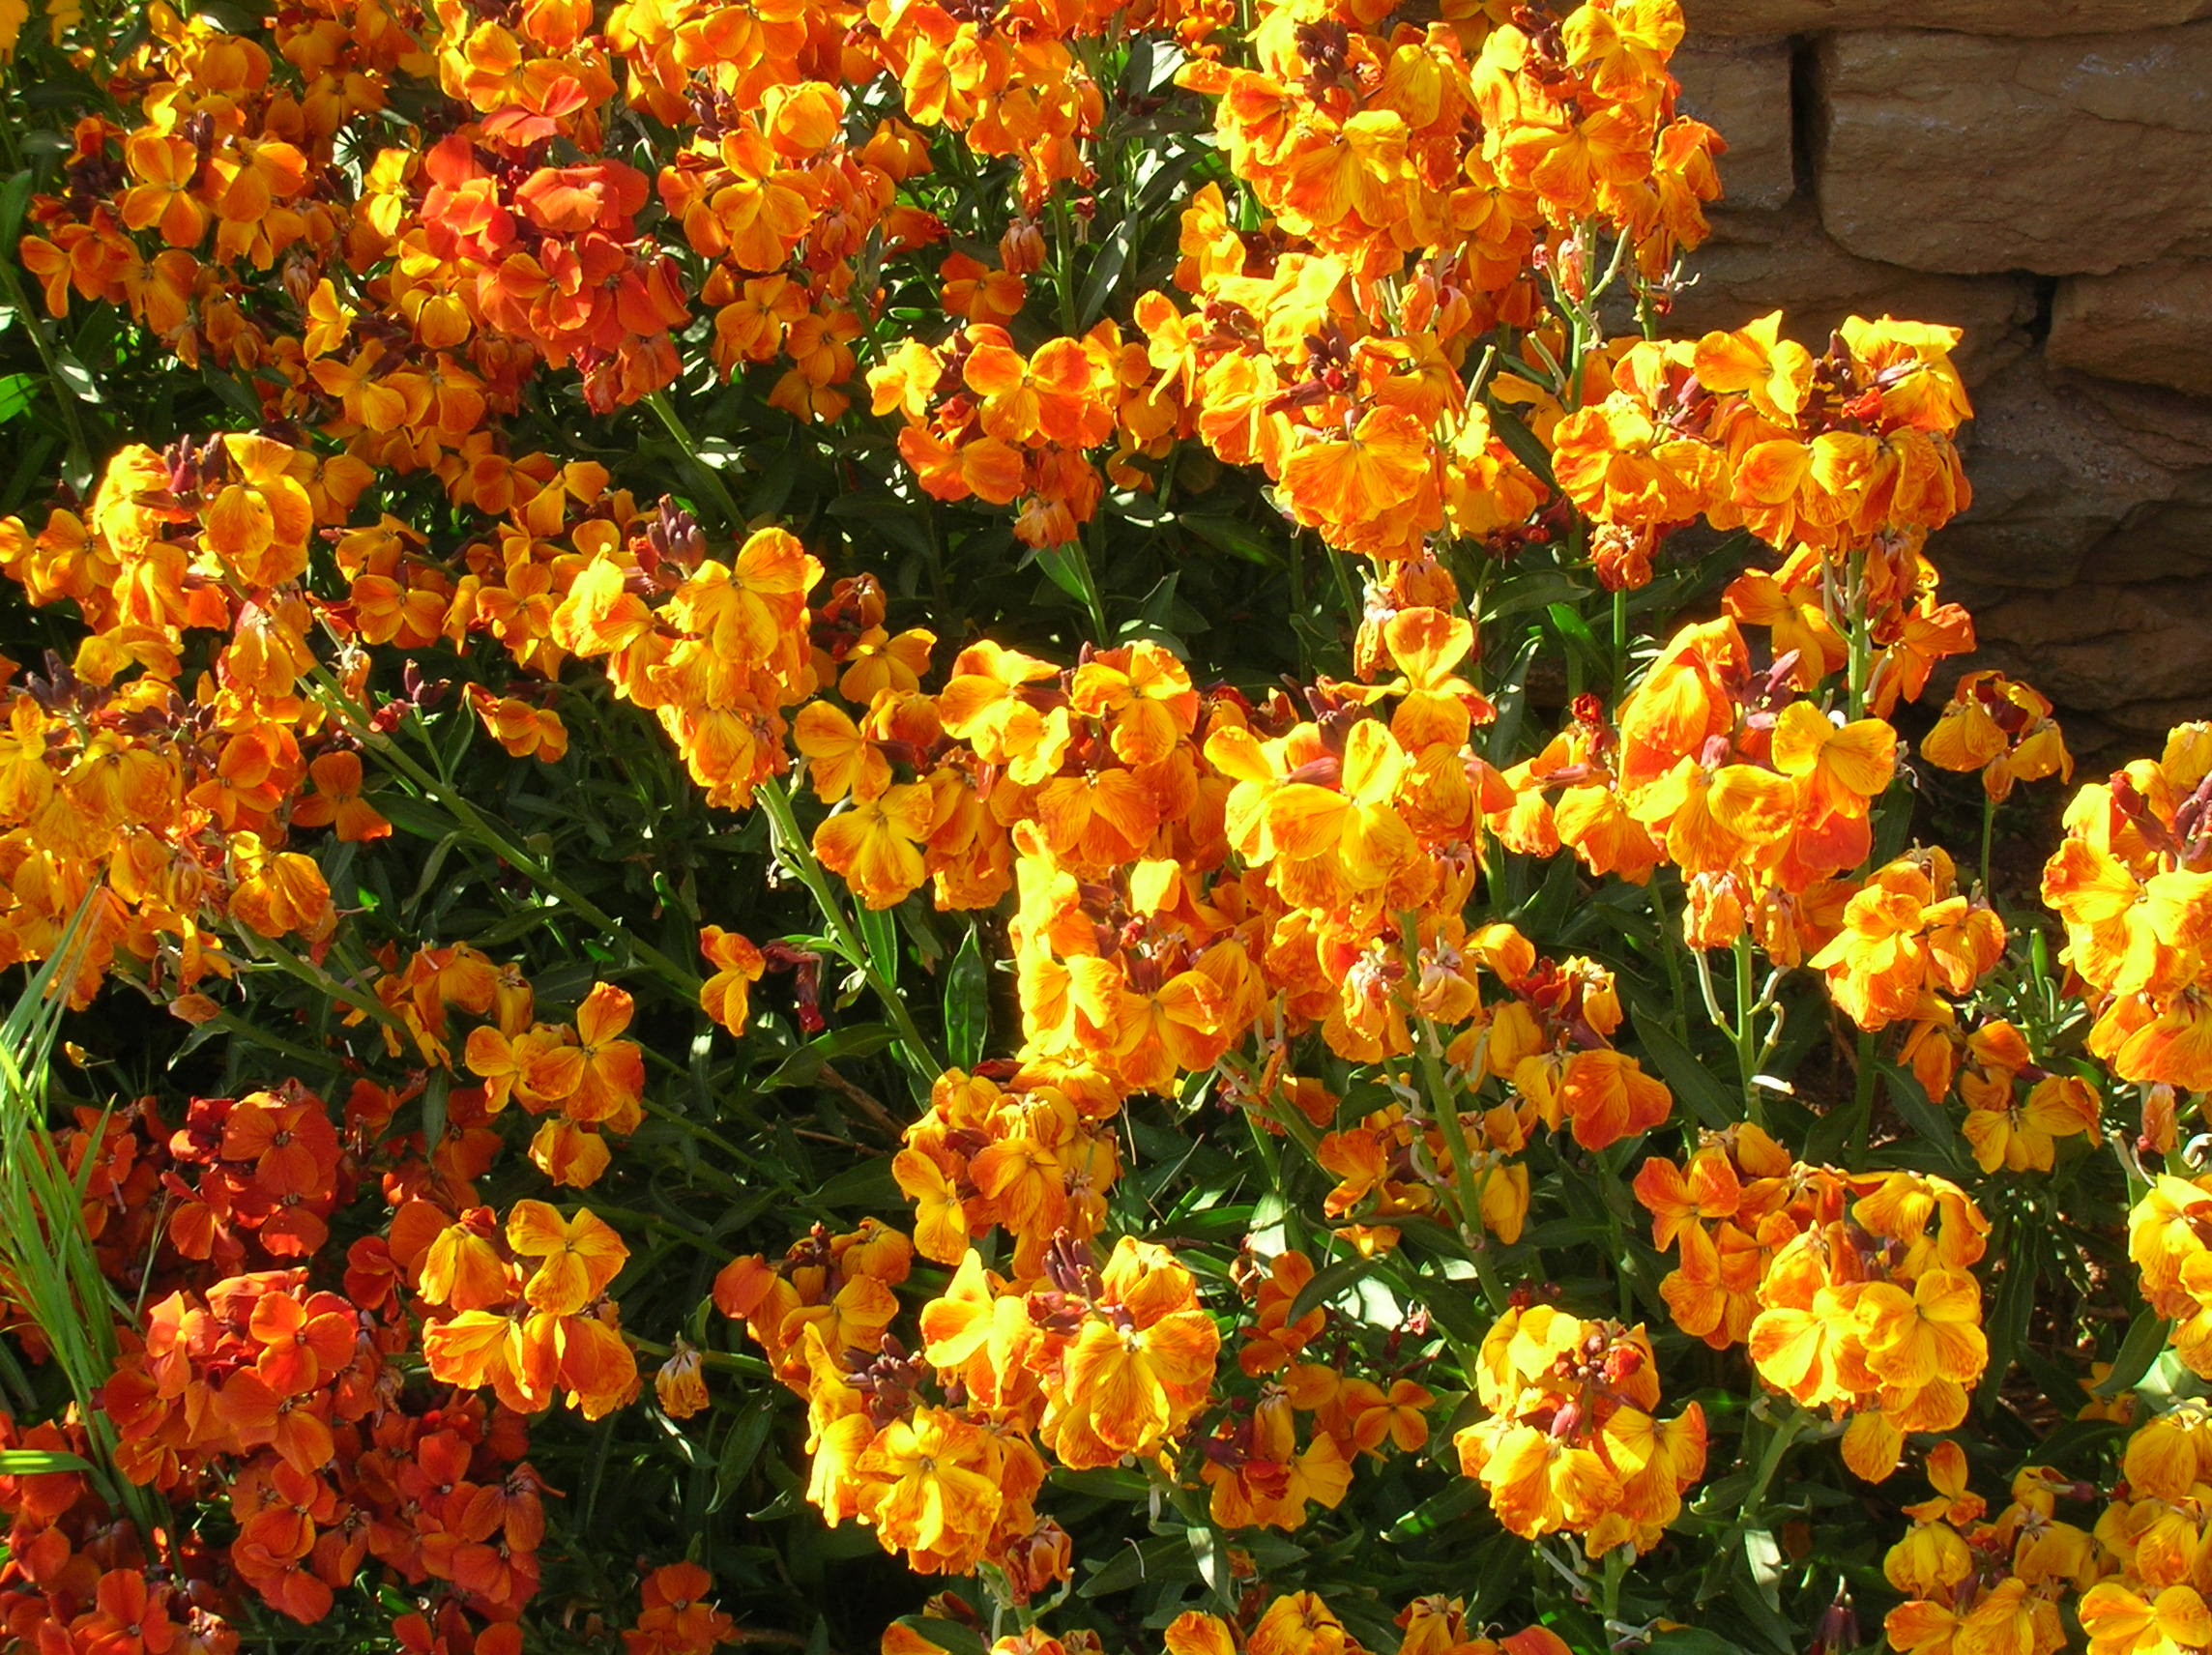 Yellow and orange wallflowers